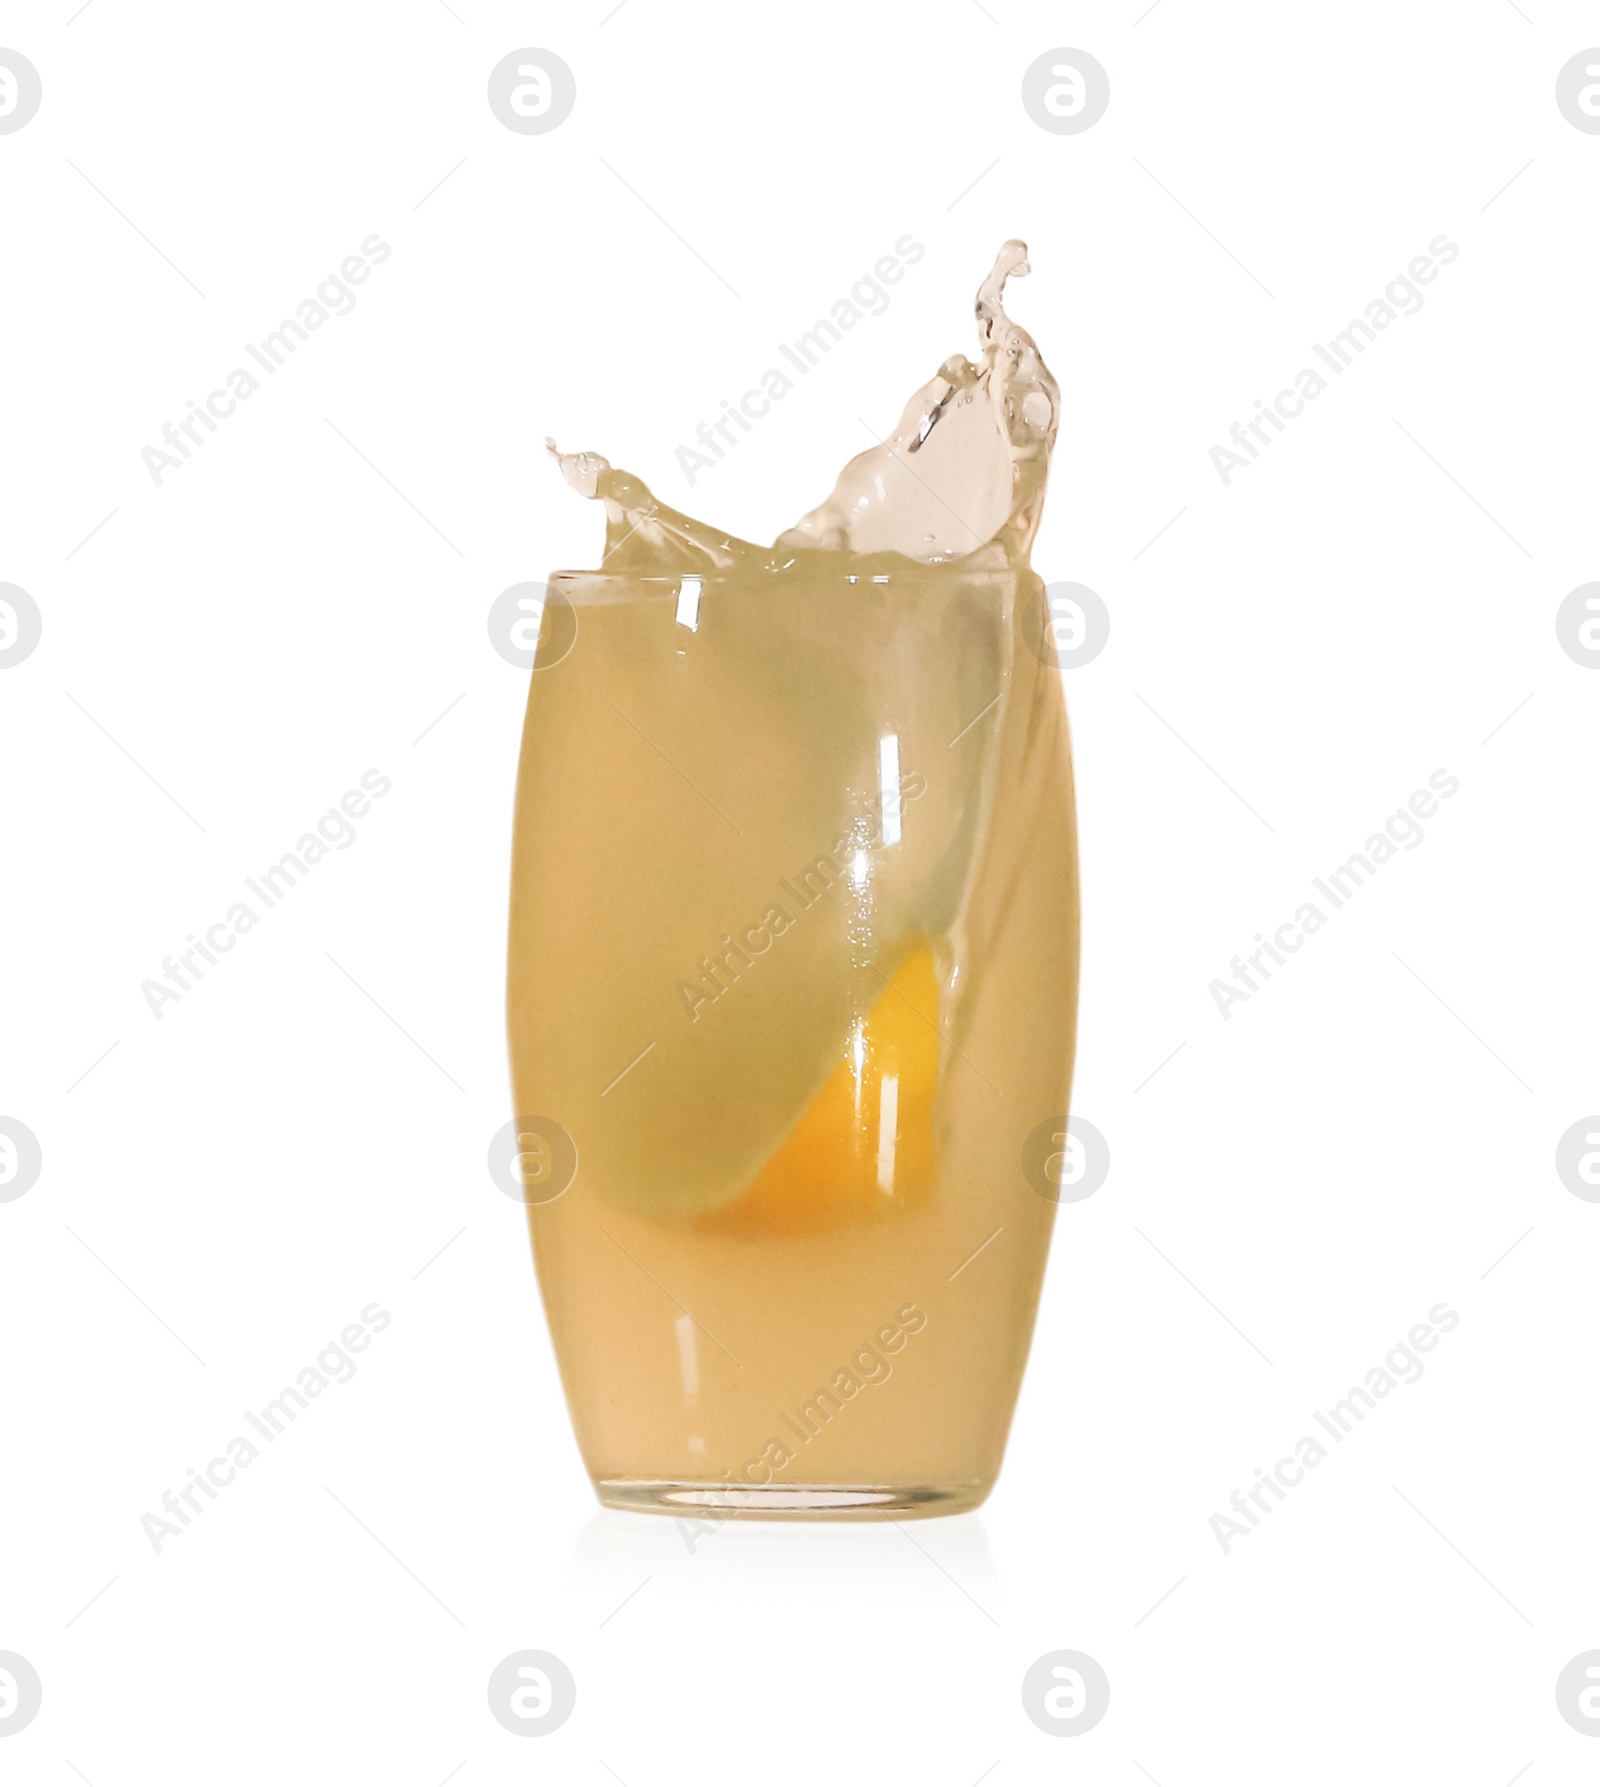 Photo of Lemon slice falling into glass of juice on white background